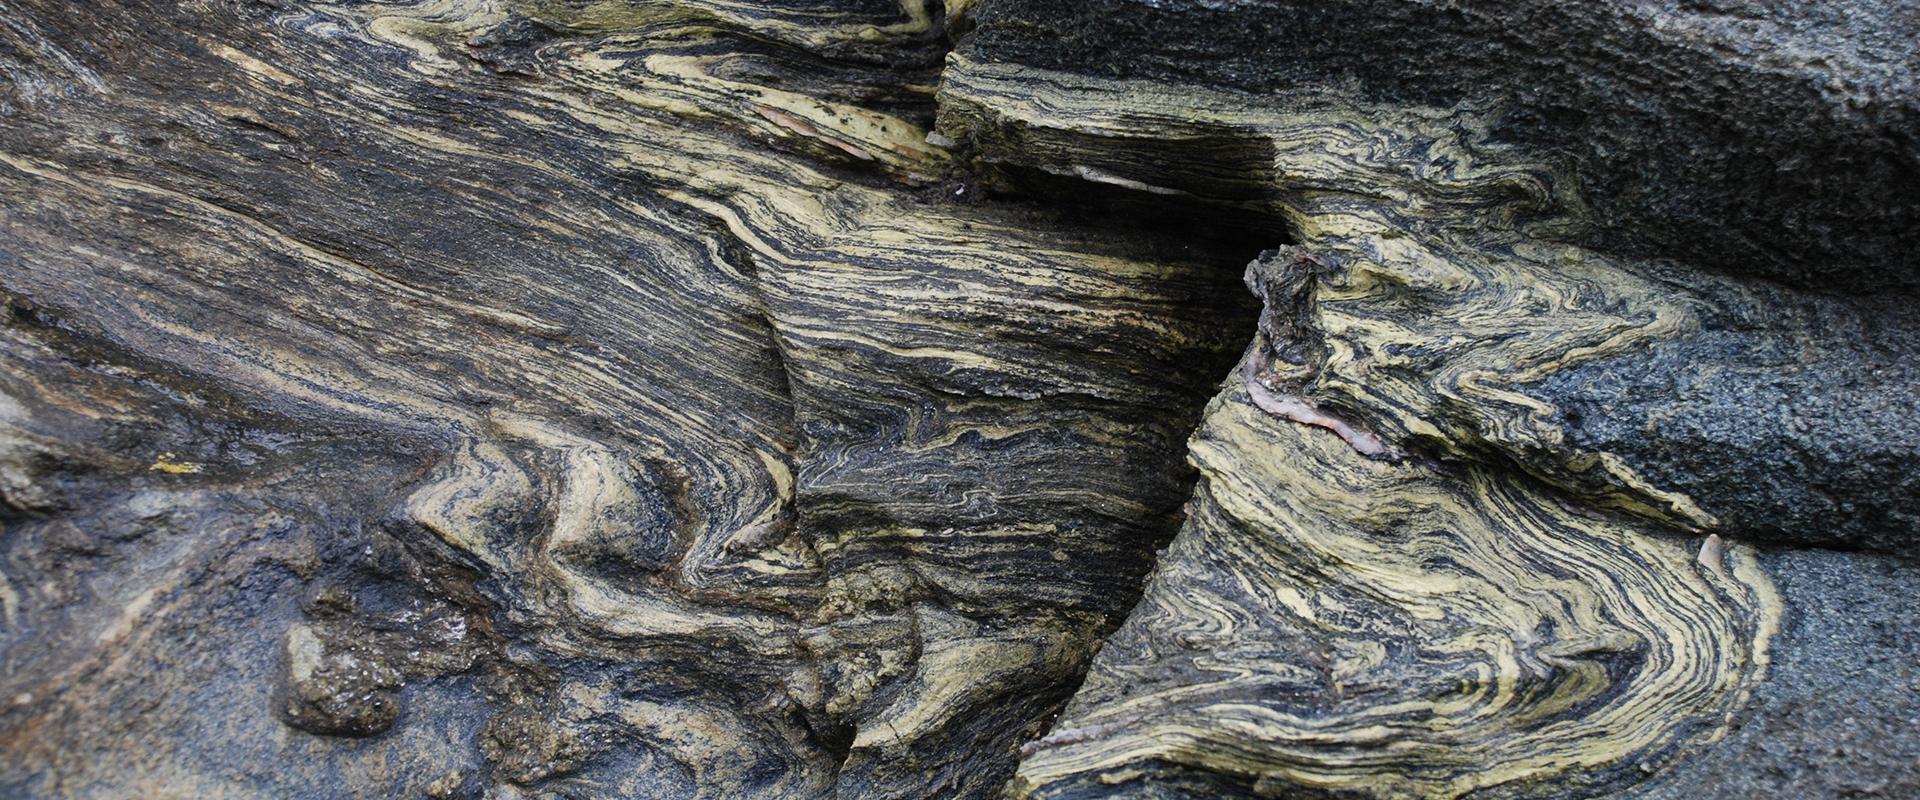 Folded shale, Morbihan